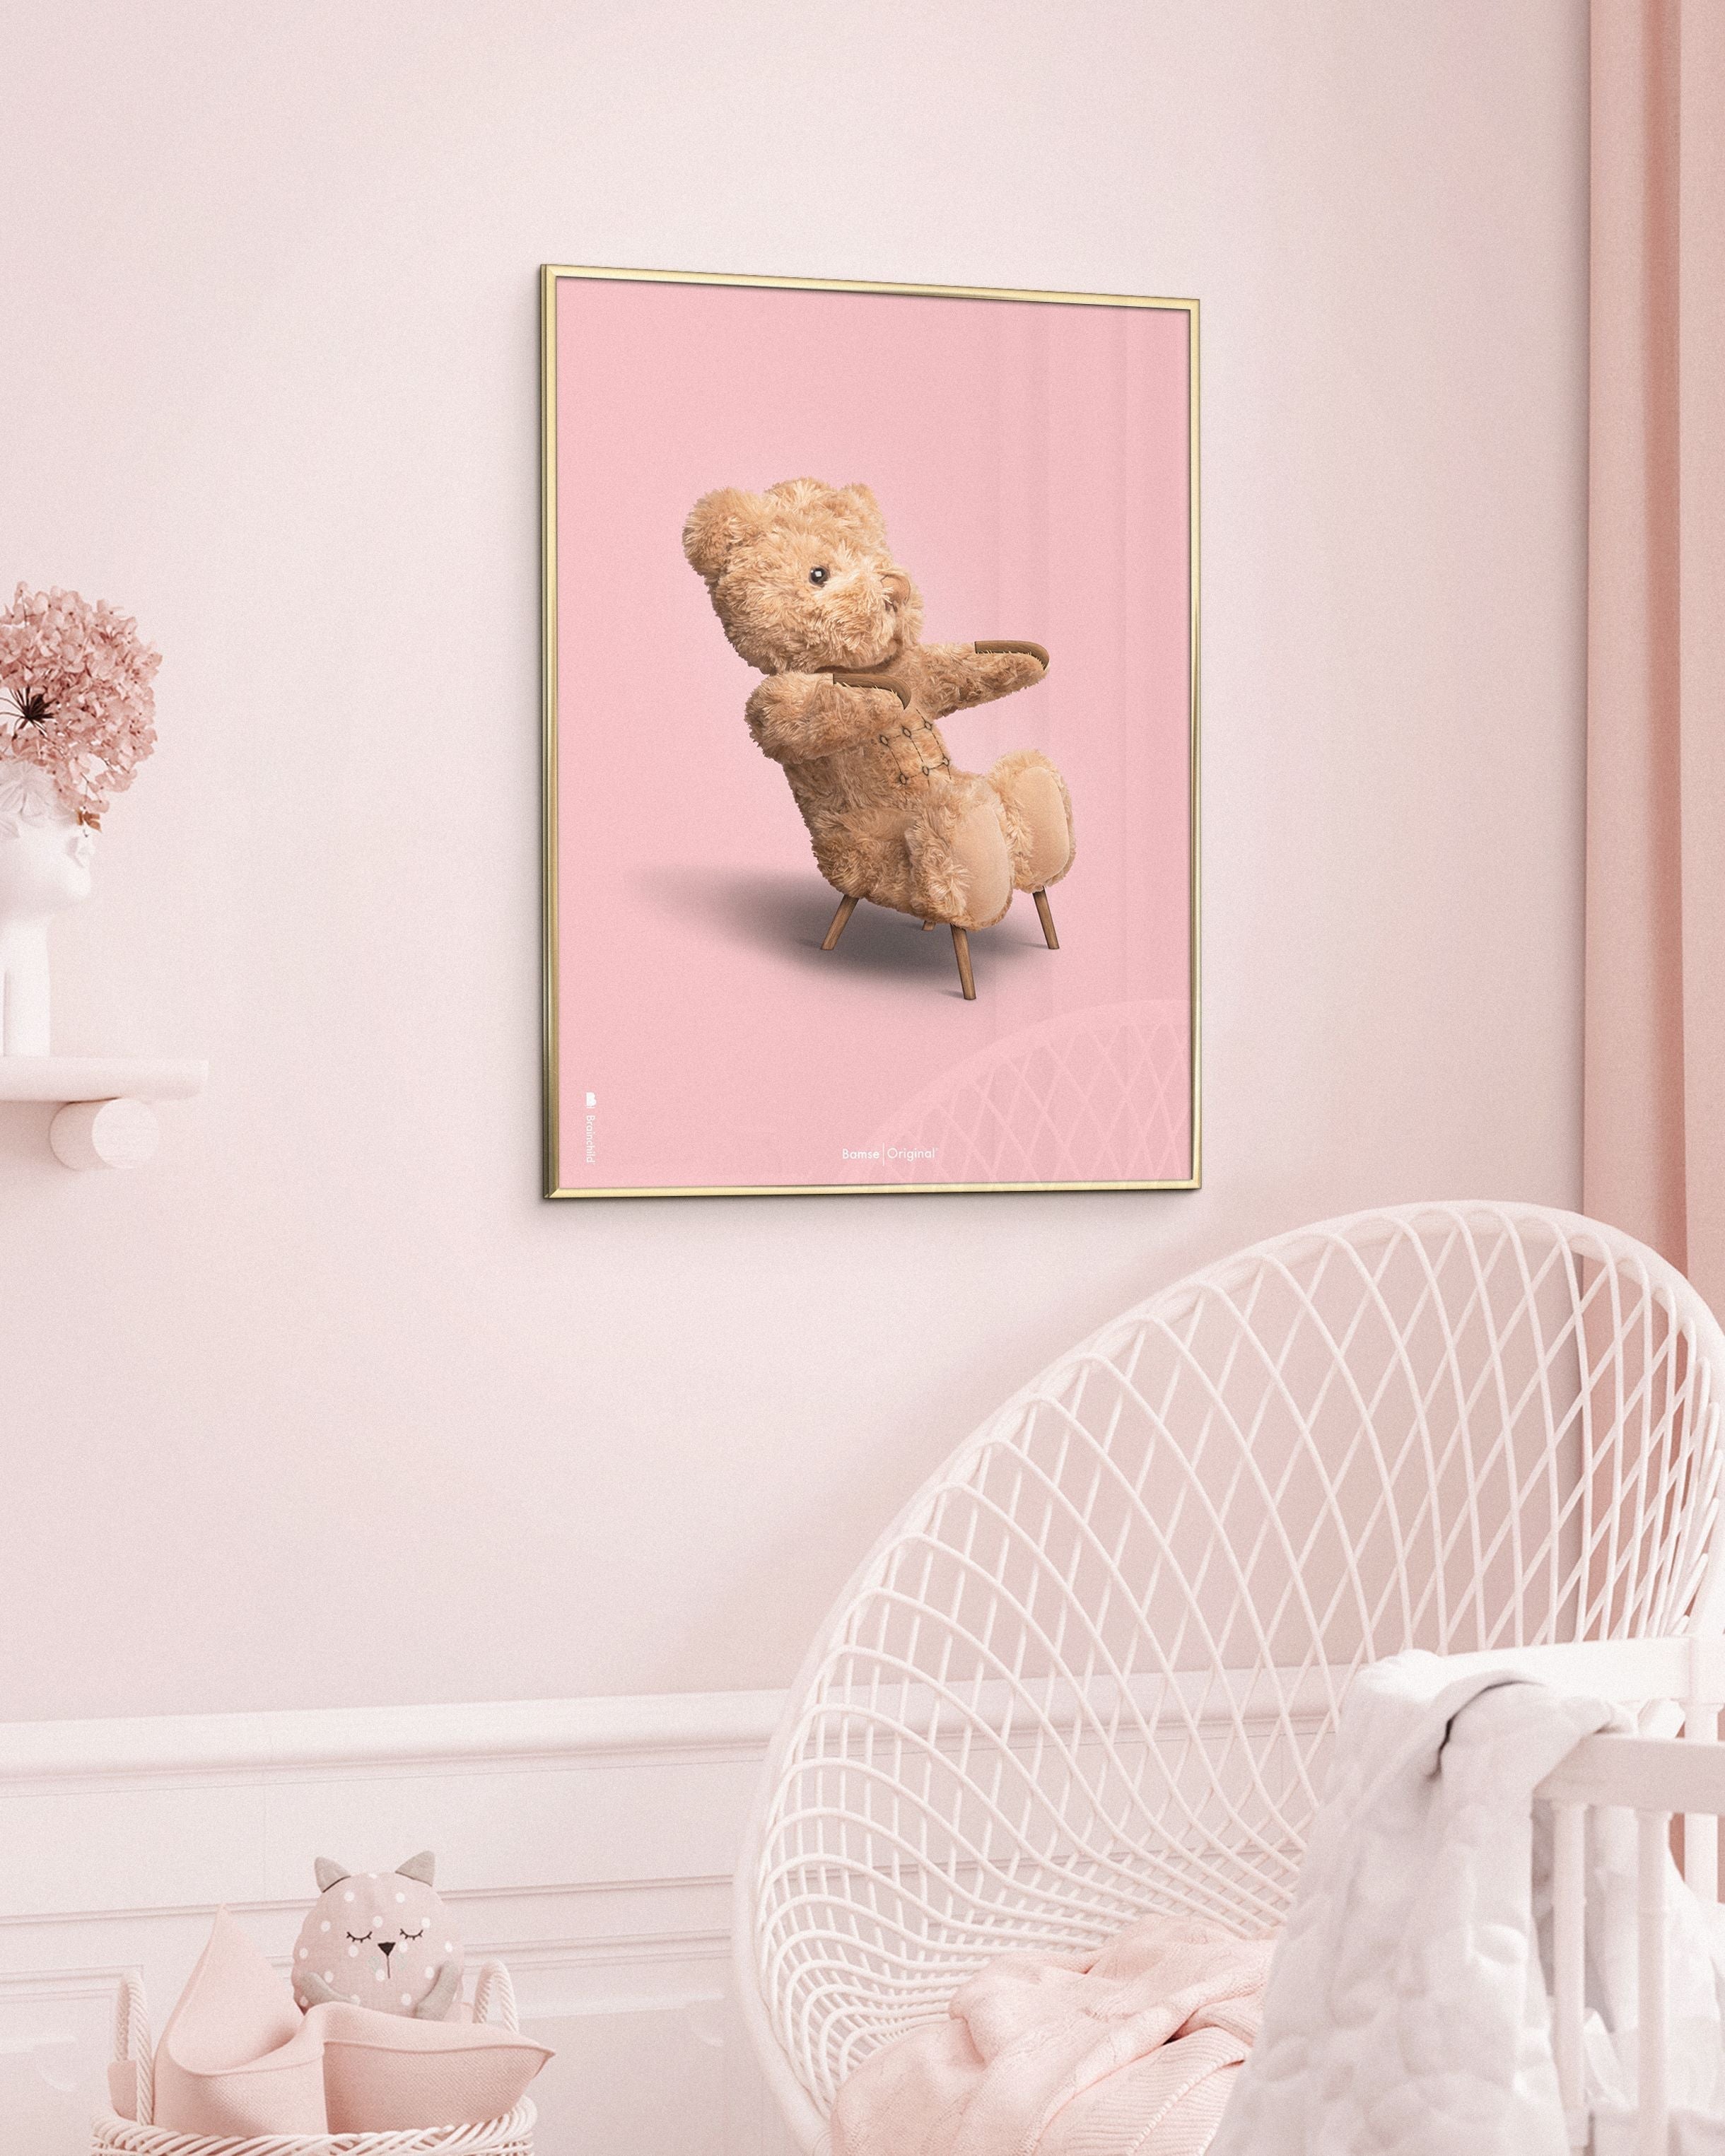 Brainchild Cadre d'affiche classique d'ours en peluche en bois foncé Ram 30x40 cm, fond rose